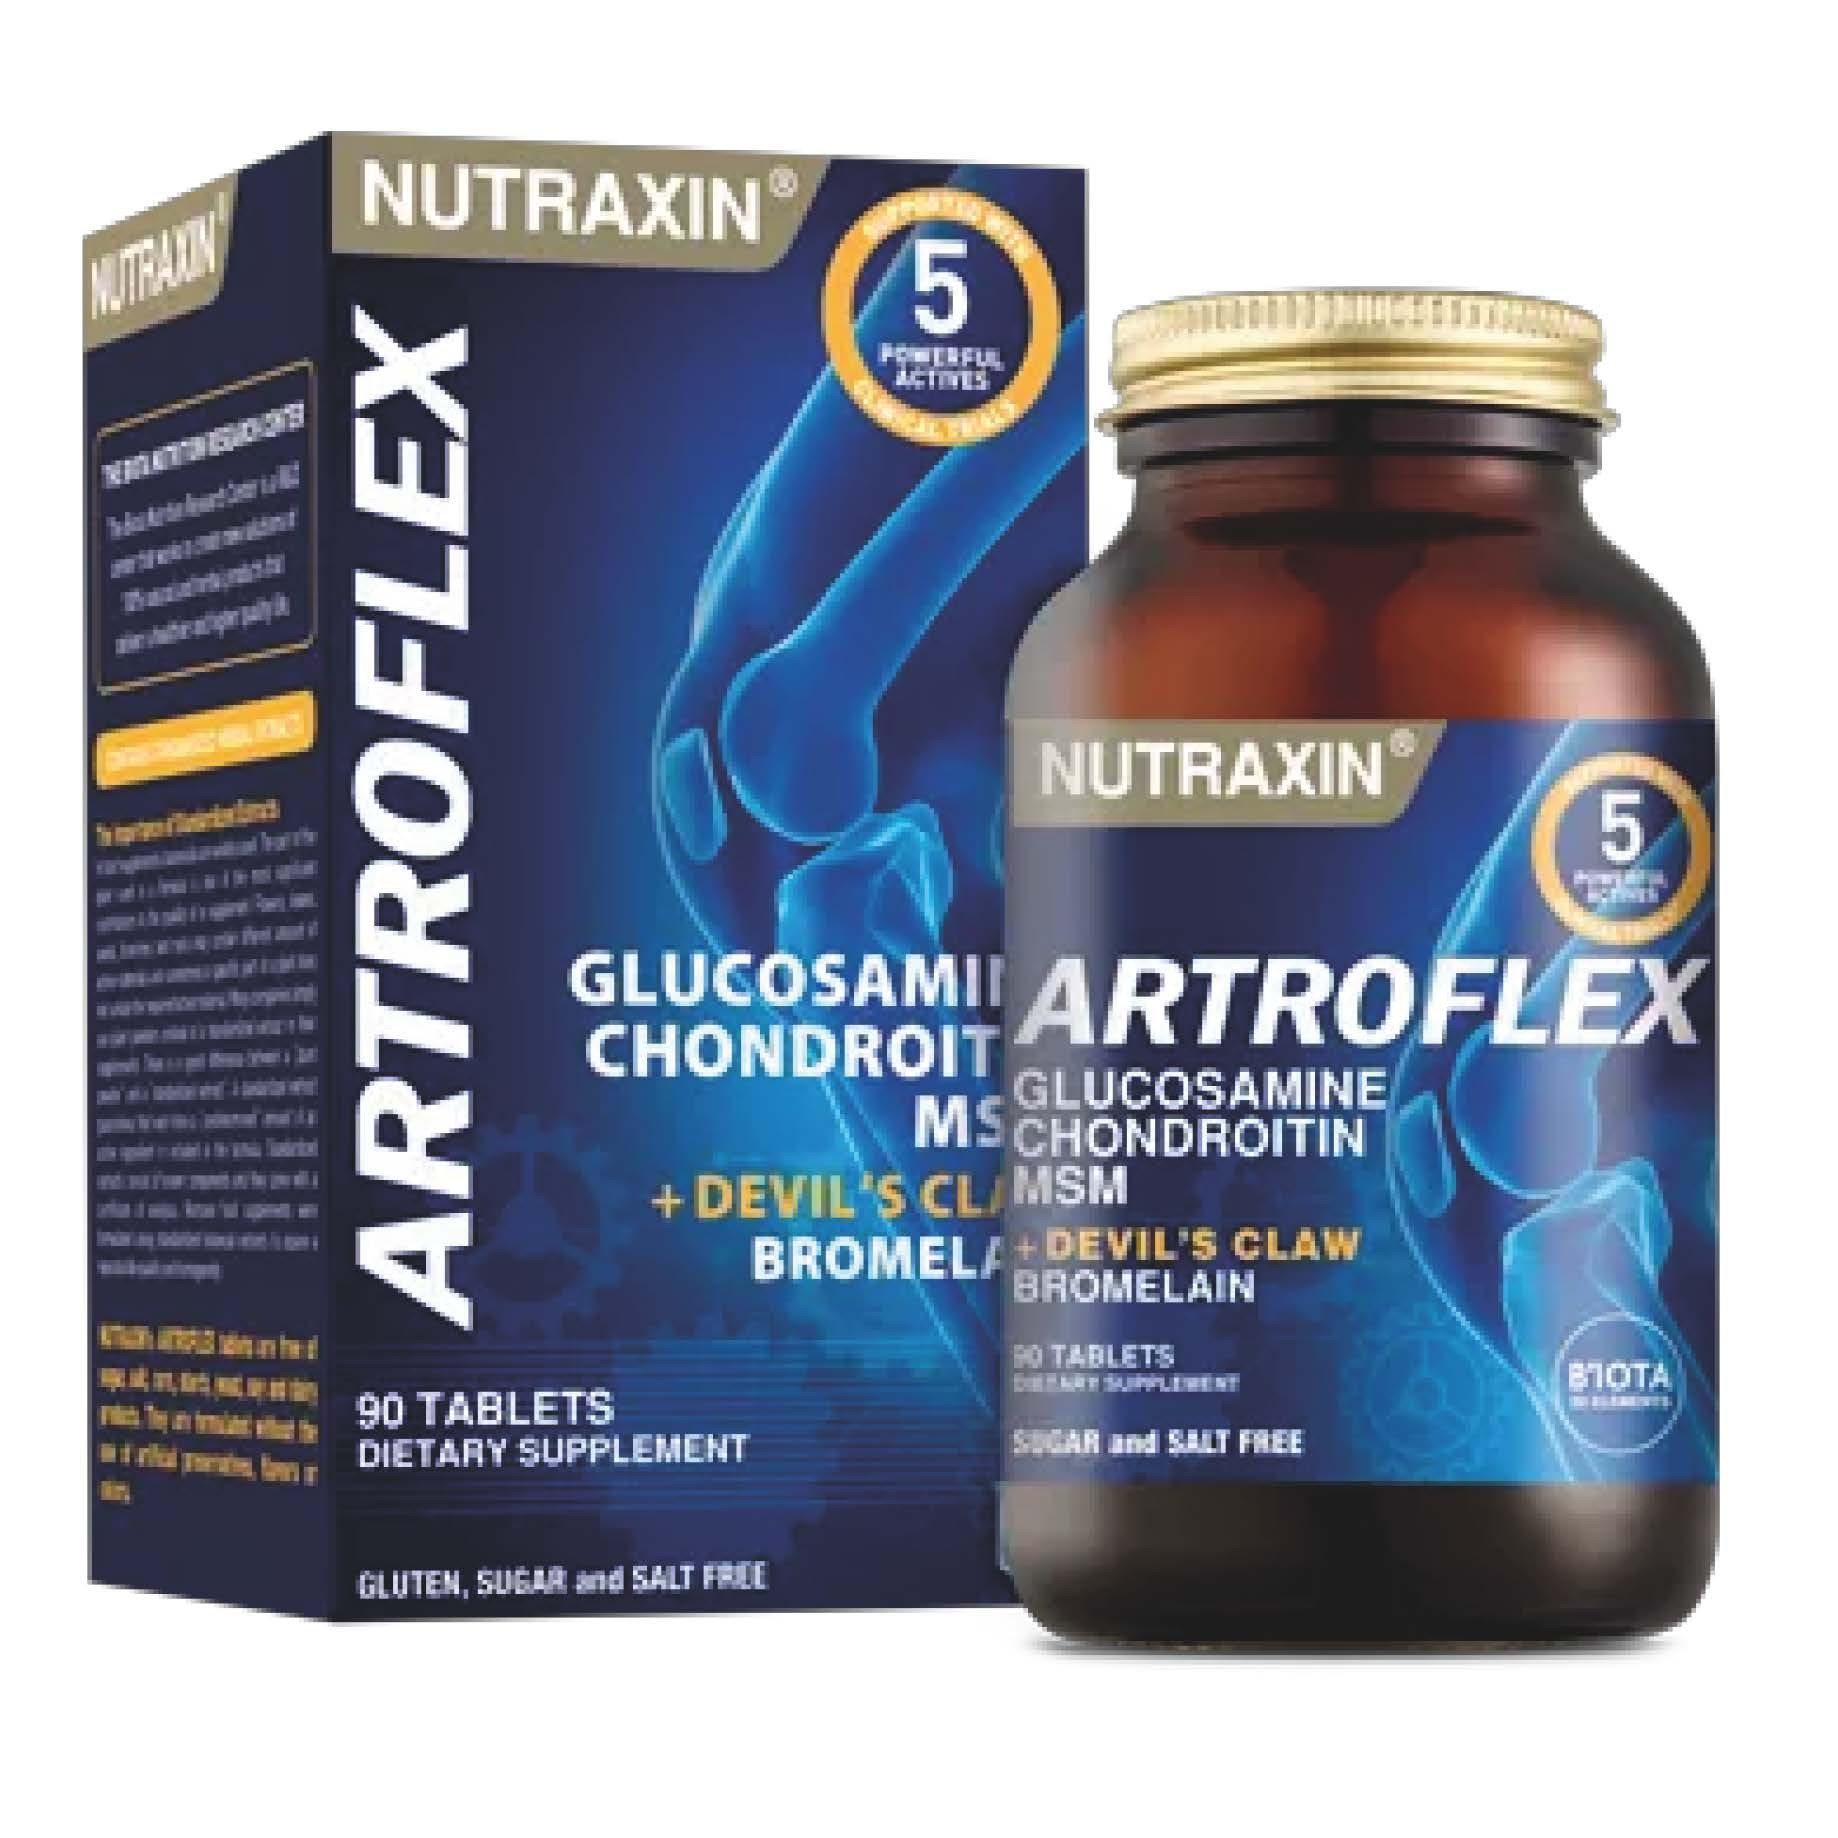 Artoflex - Glukosamine